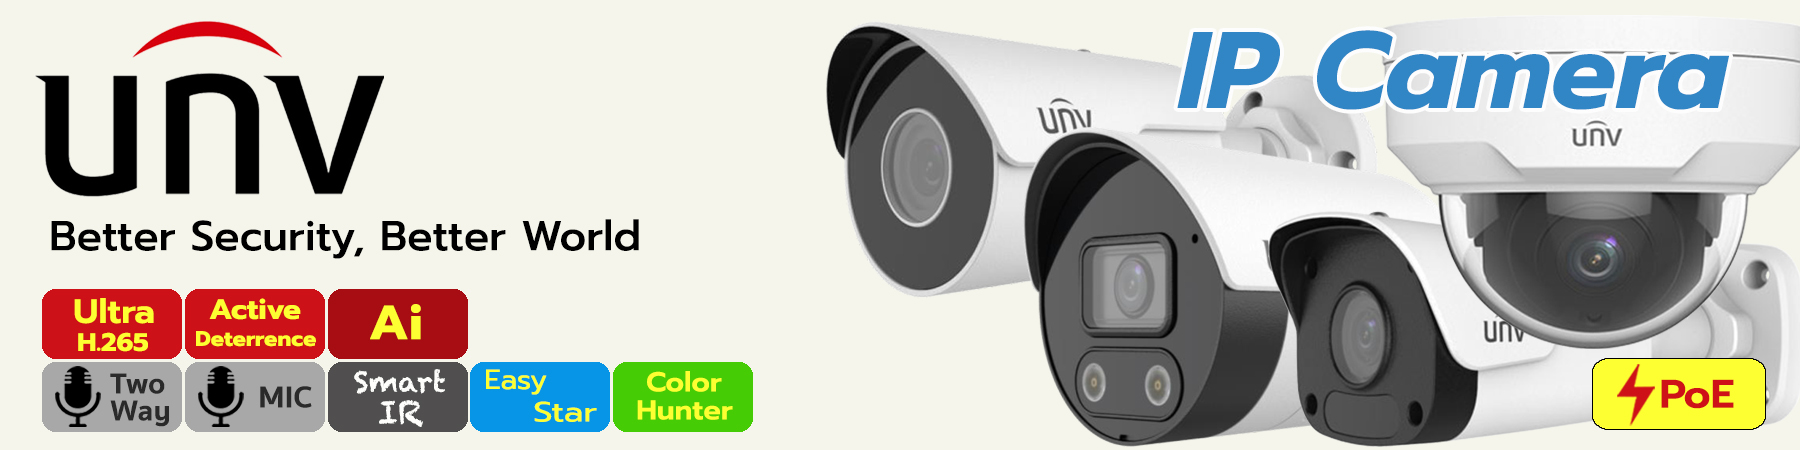 กล้องวงจรปิด UNV, กล้องวงจรปิด Uniview, UNV IP Camera, UNV Easy Star Light, UNV Color Hunter, UNV IP Camera 2MP, UNV IP Camera 3MP, UNV IP Camera 4MP